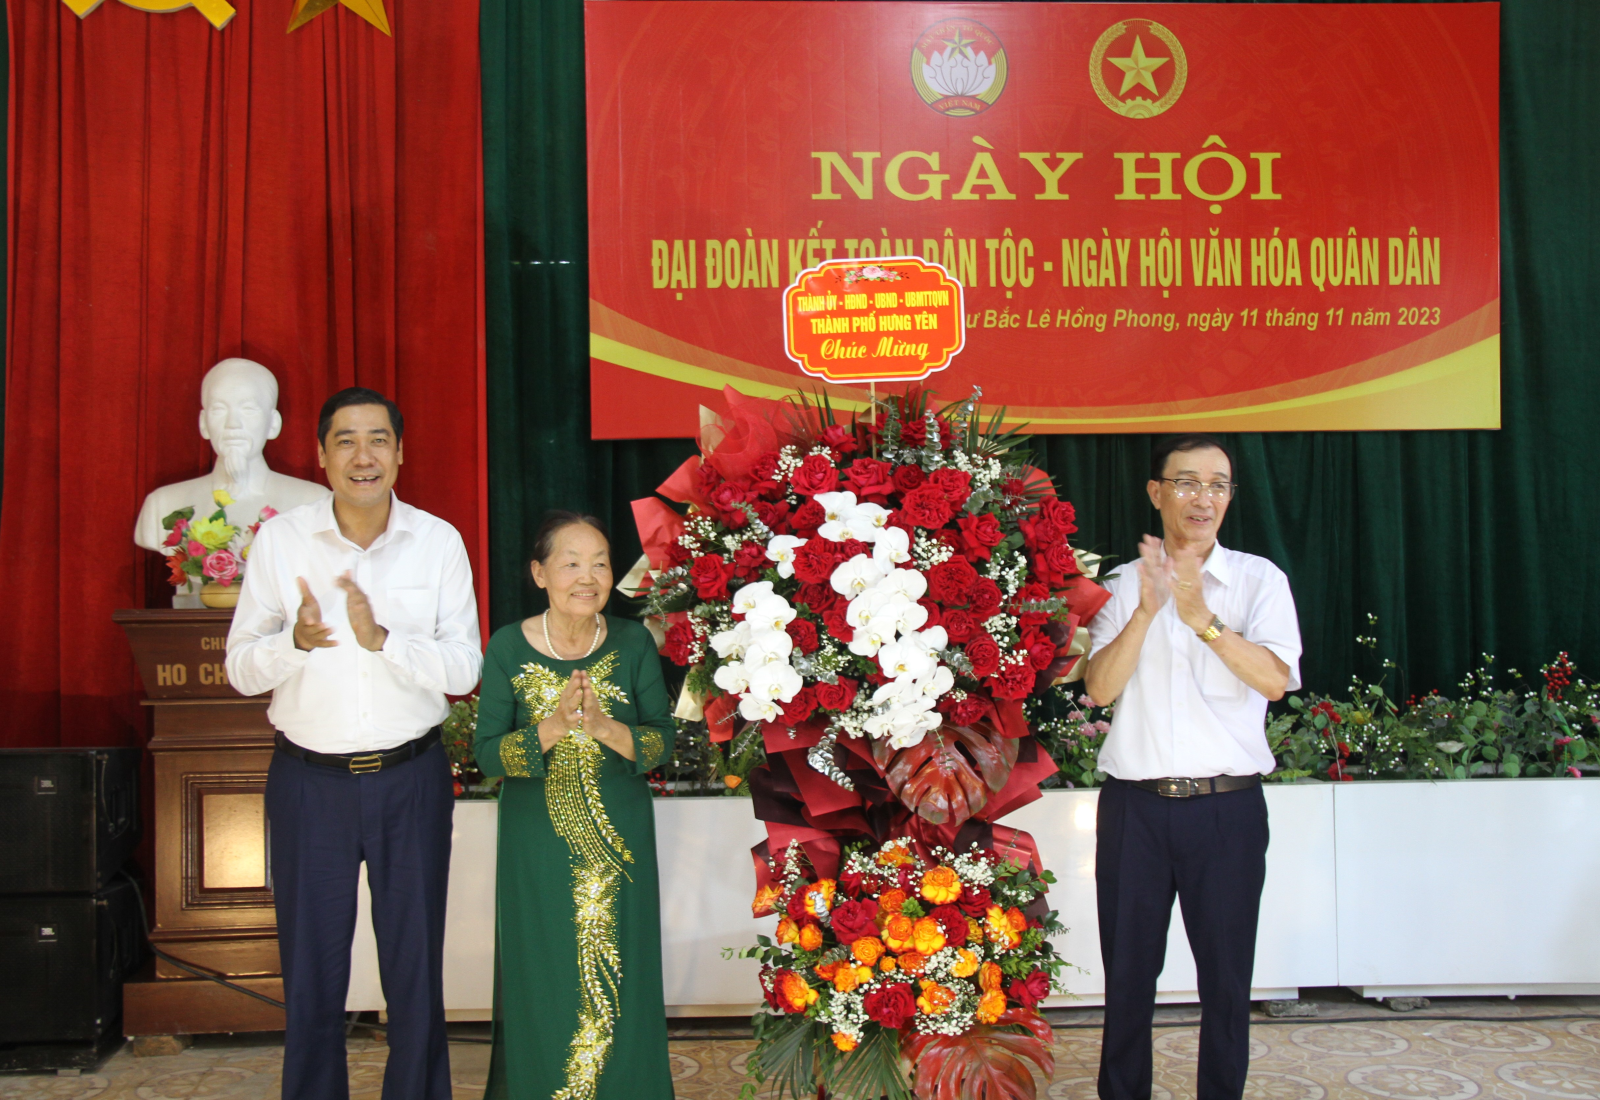 Khu phố Bắc Lê Hồng Phong, phường Minh Khai tổ chức ngày Hội Đại đoàn kết toàn dân tộc, ngày Hội văn hóa quân dân năm 2023